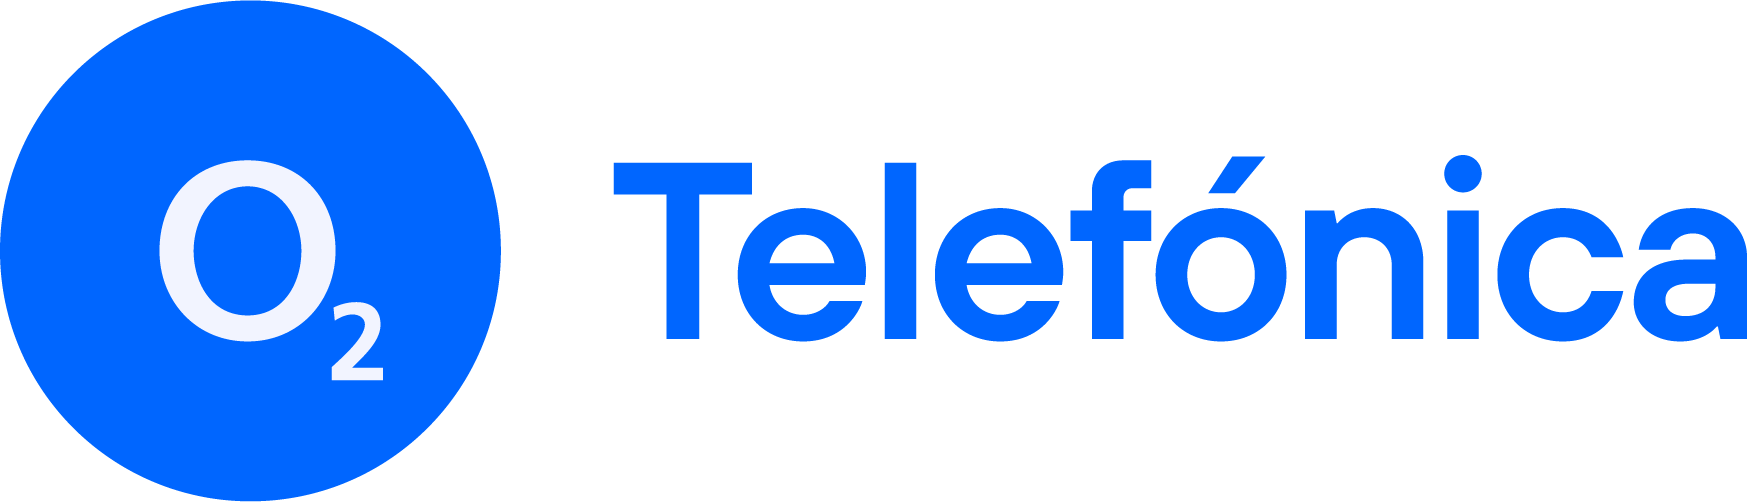 o2-Telefonica-Dualbranding-Logo-06-2021-Blue_RGB-HighRes